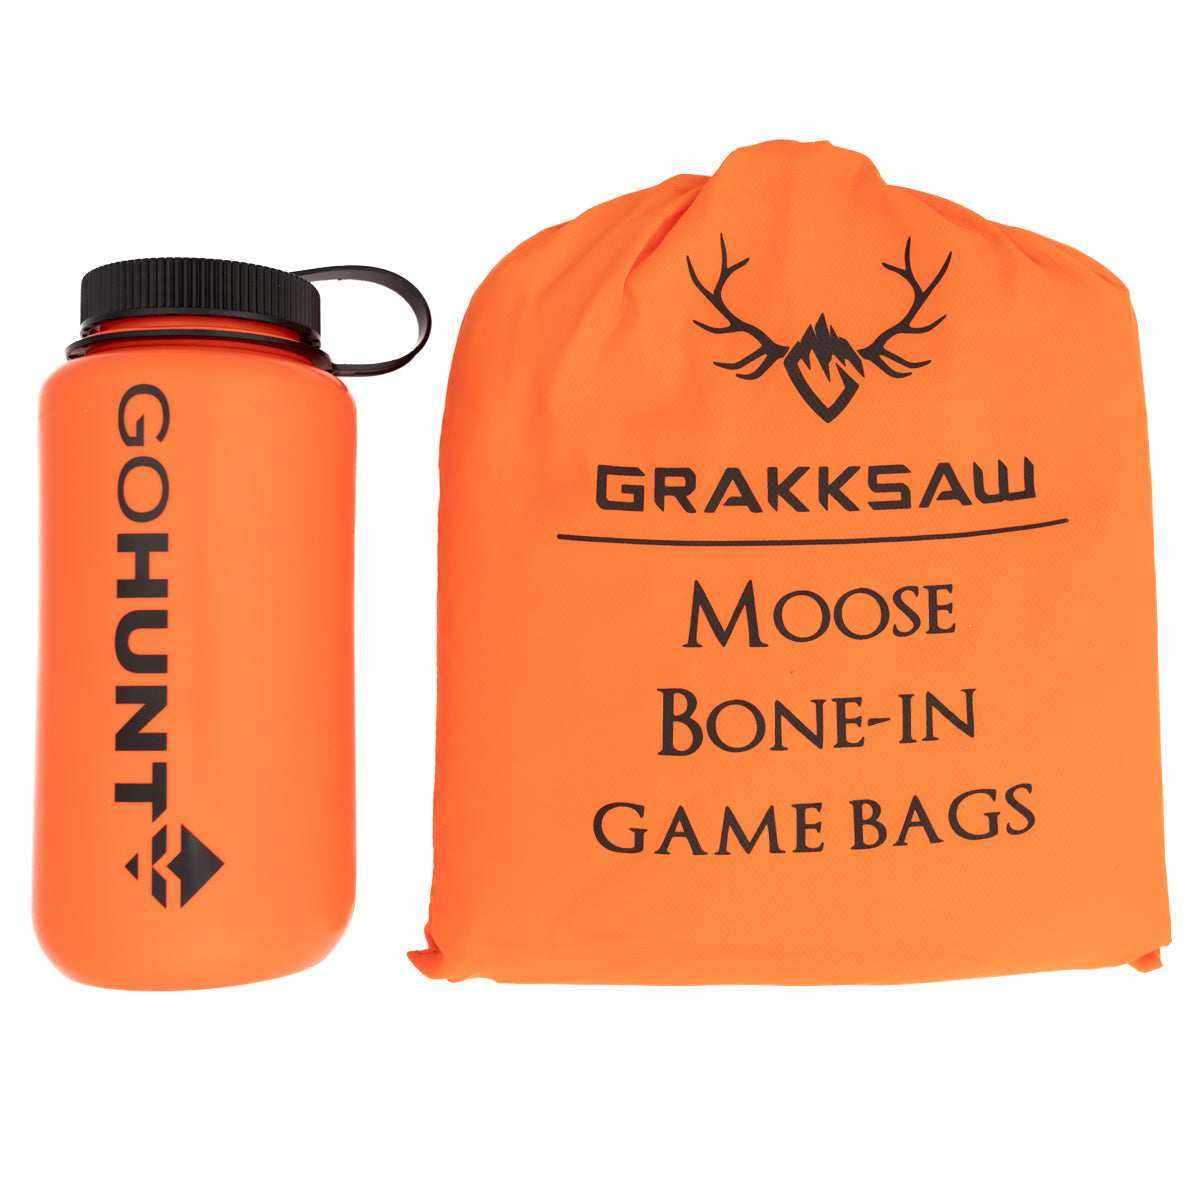 Grakksaw Moose Game Bags in  by GOHUNT | Grakksaw - GOHUNT Shop